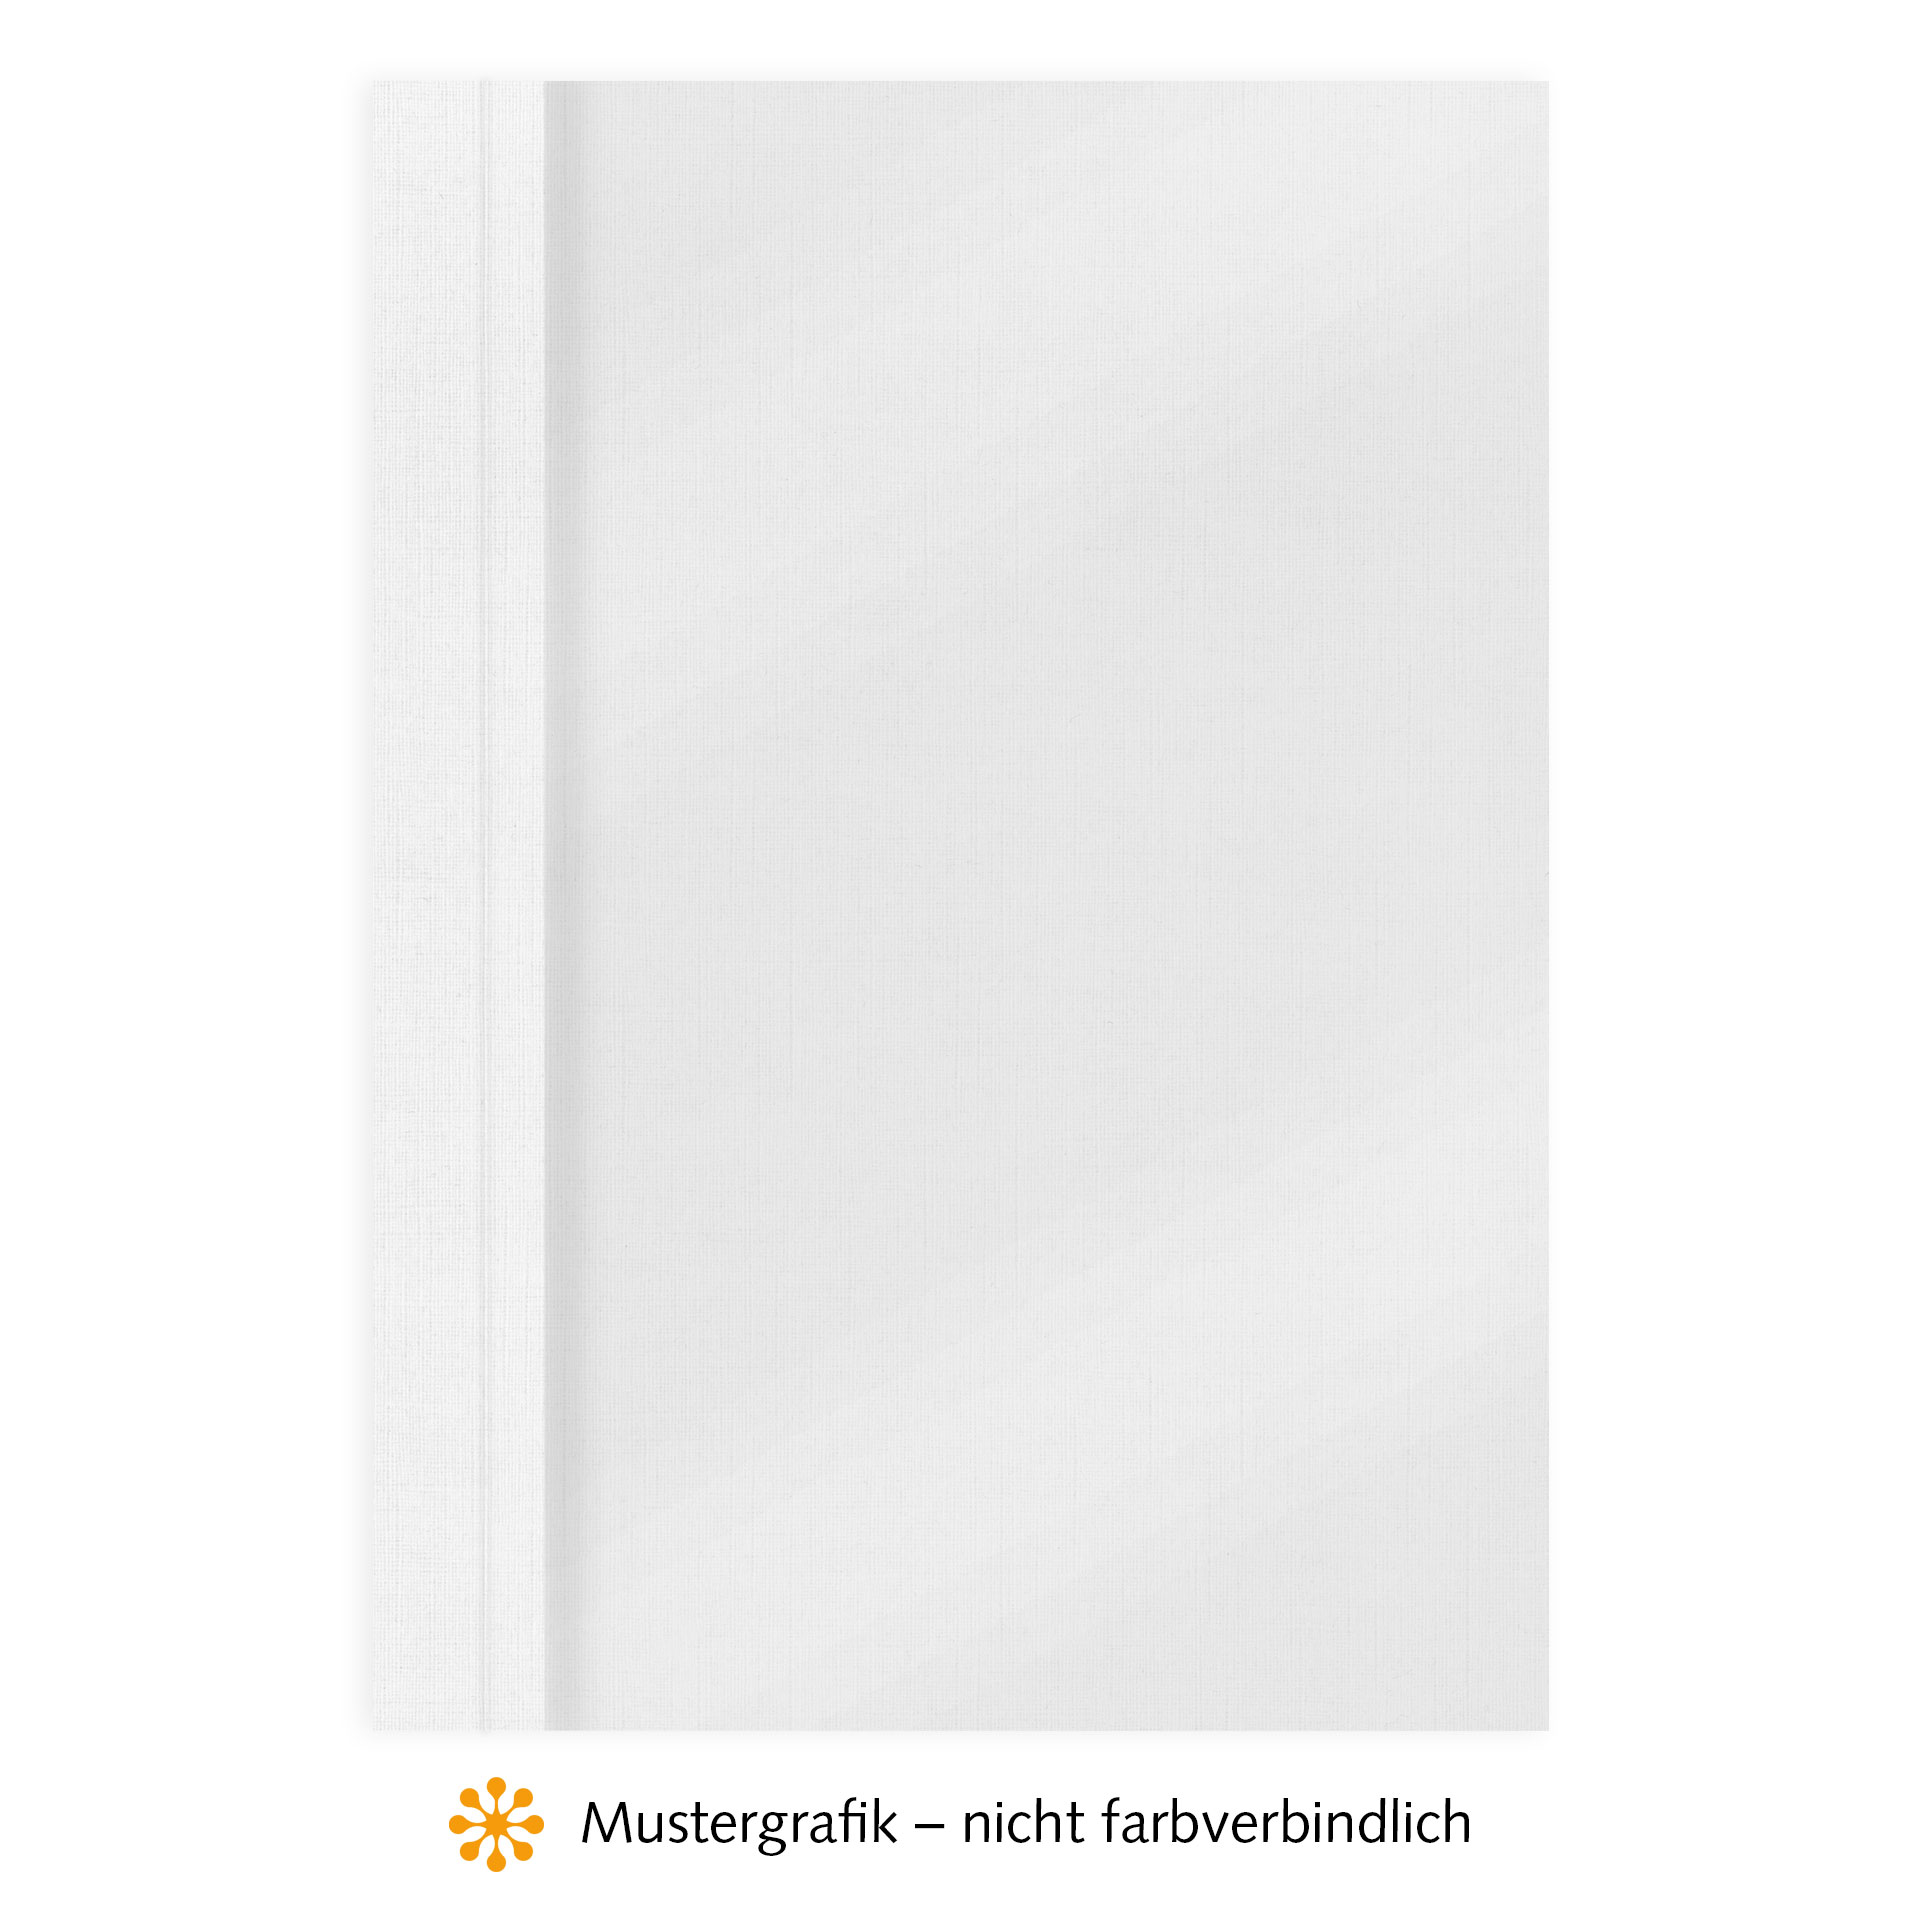 Ösenmappen DUO Cover, Vorderseite Folie MATT transparent, Rückseite Karton Leinen, Weiß, 3 mm, 21 bis 30 Blatt